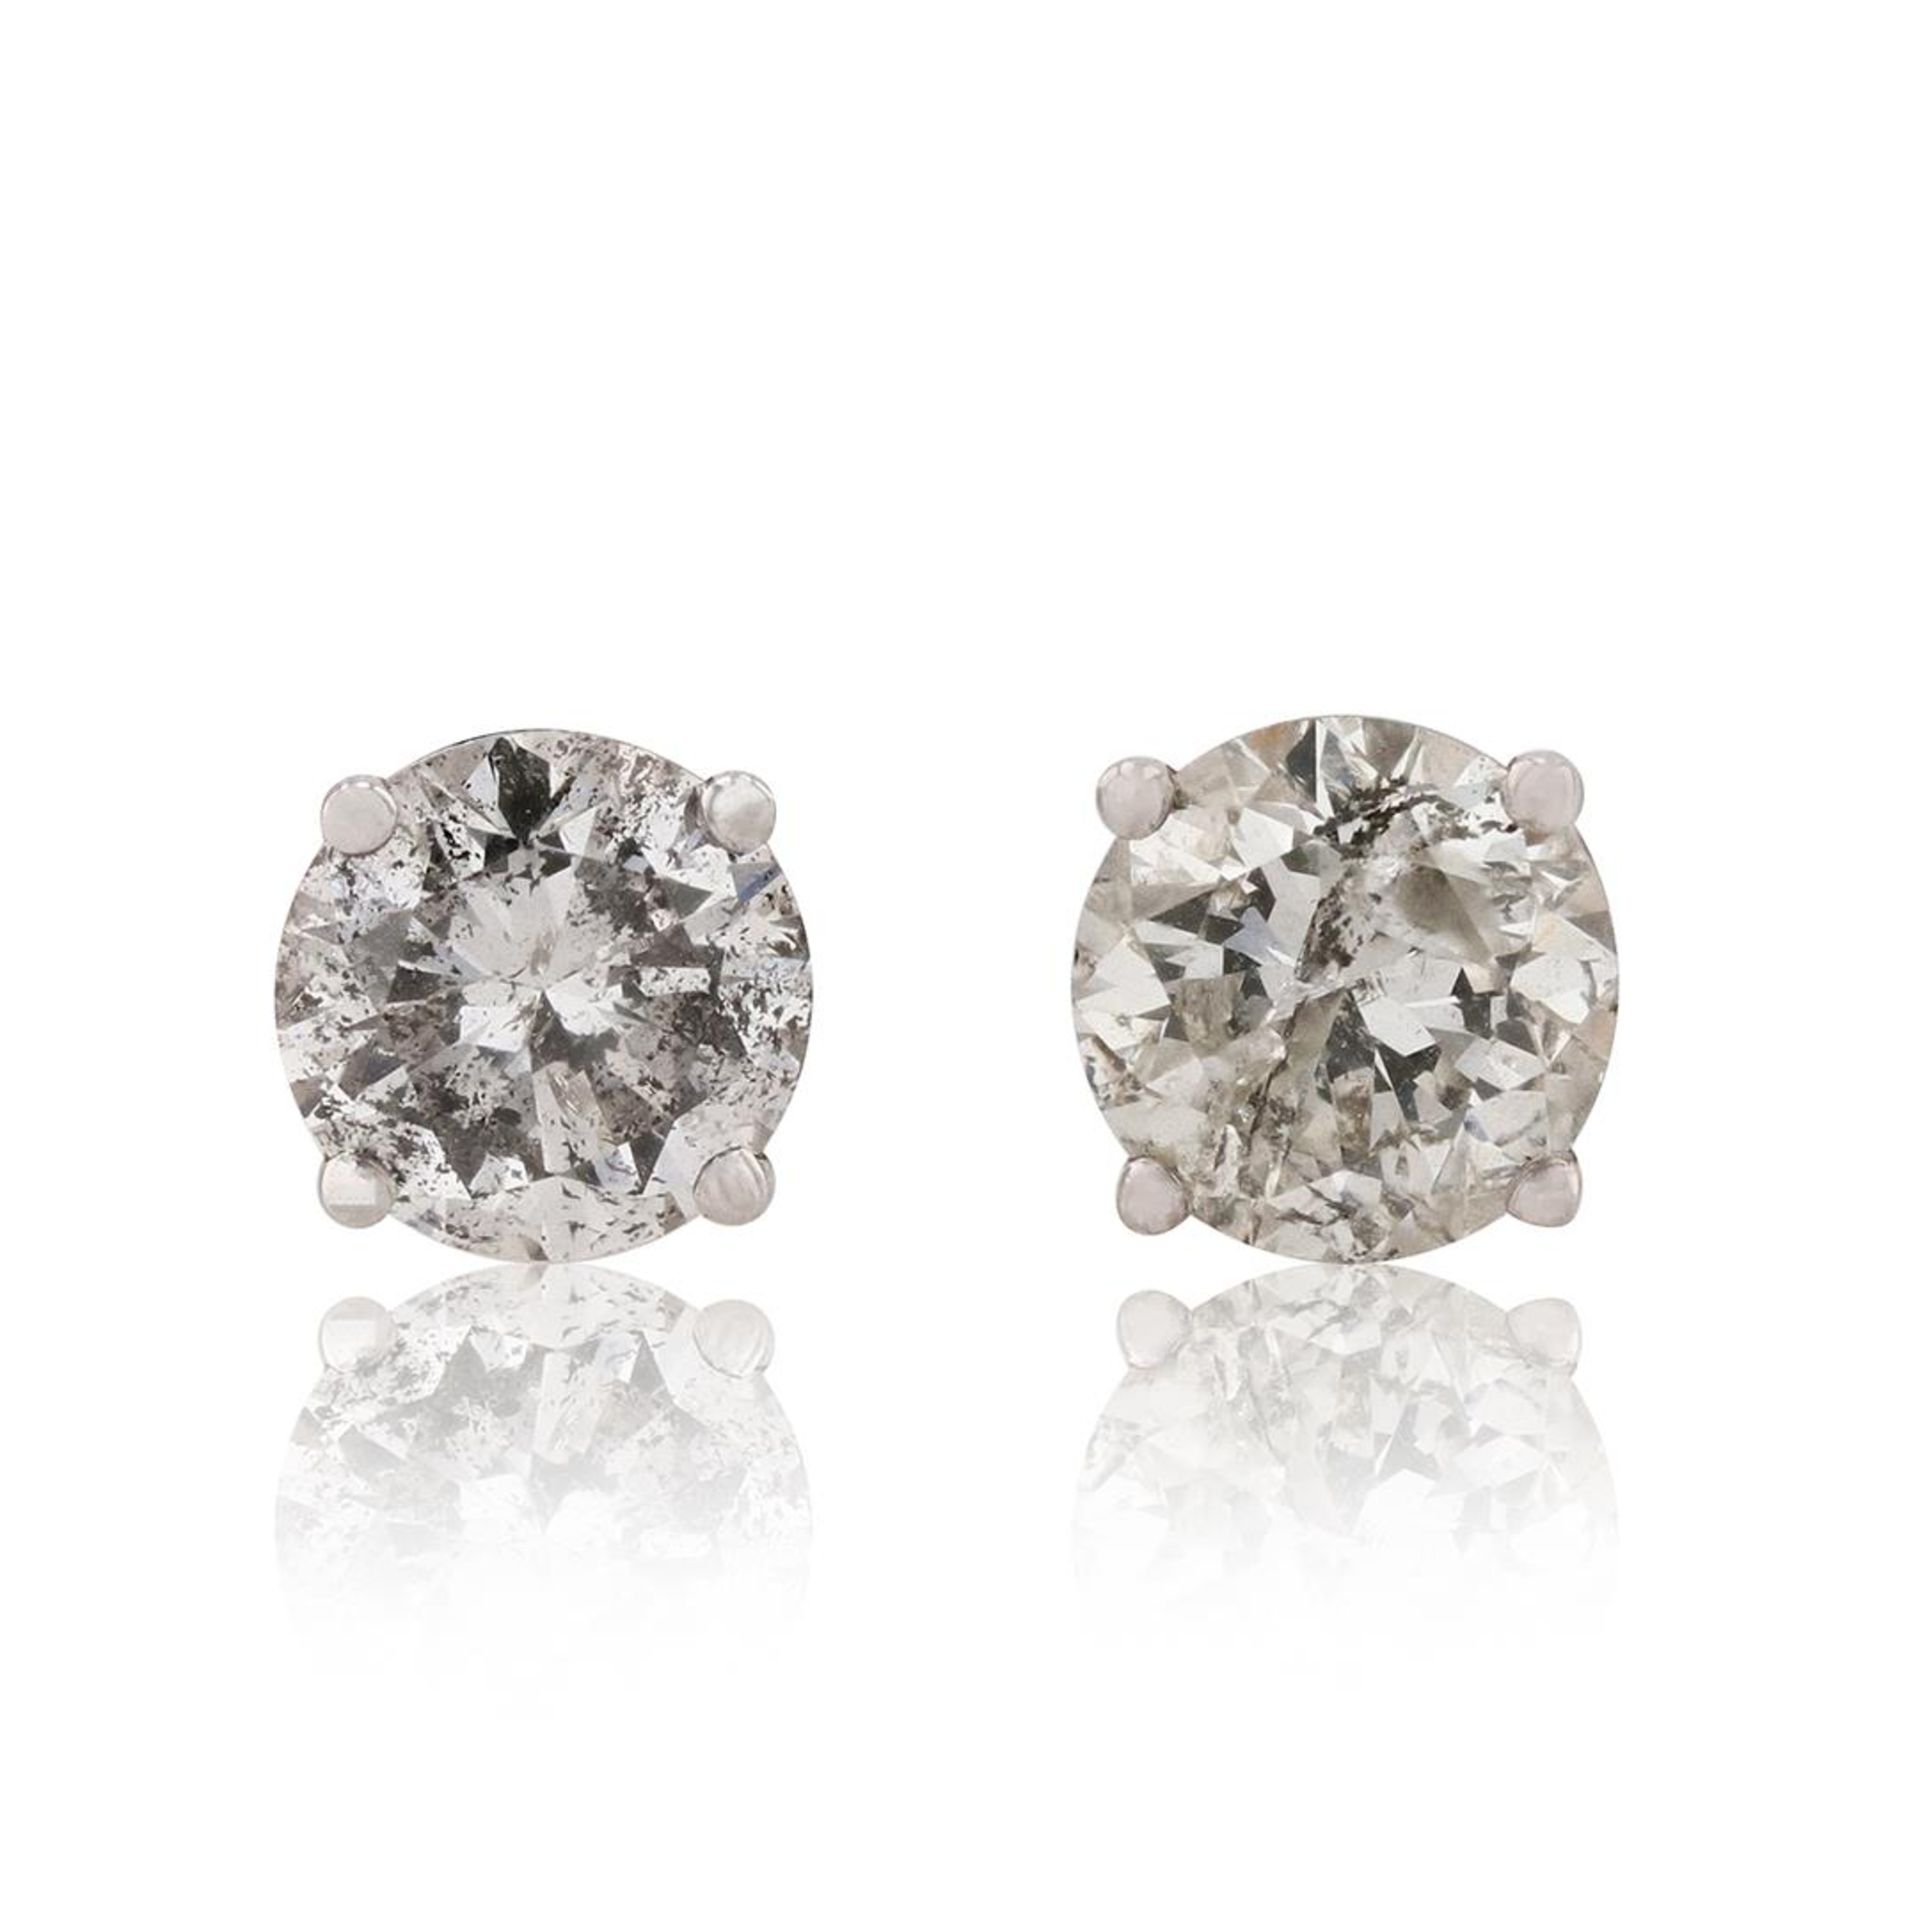 1.92 ctw Diamond 18K White Gold Earrings - Image 2 of 4